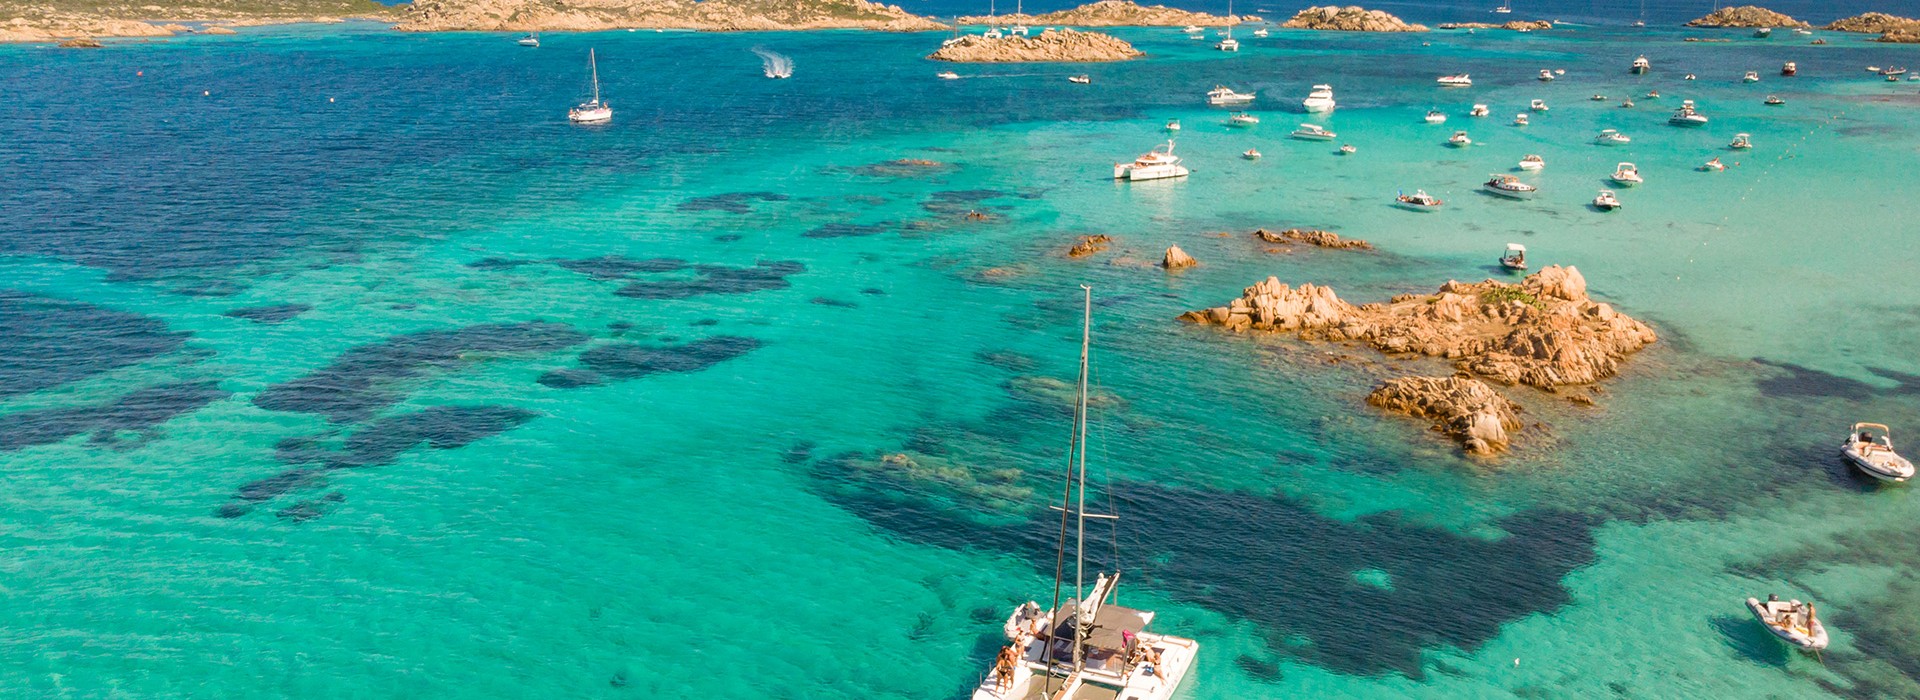 Korsika - Sardunya Adaları